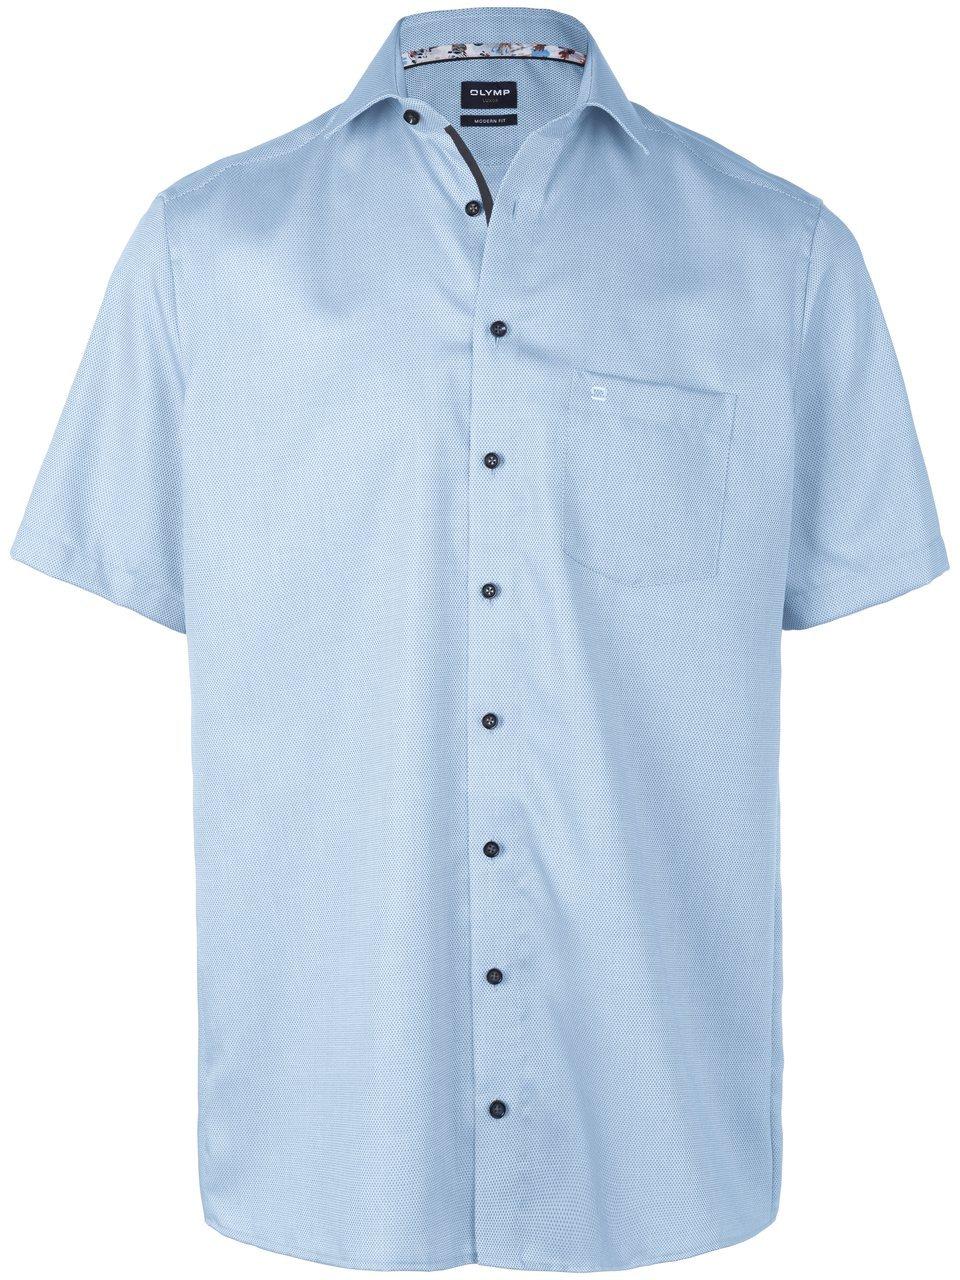 OLYMP - Short Sleeve Overhemd Luxor Melange Lichtblauw - Maat 44 - Comfort-fit